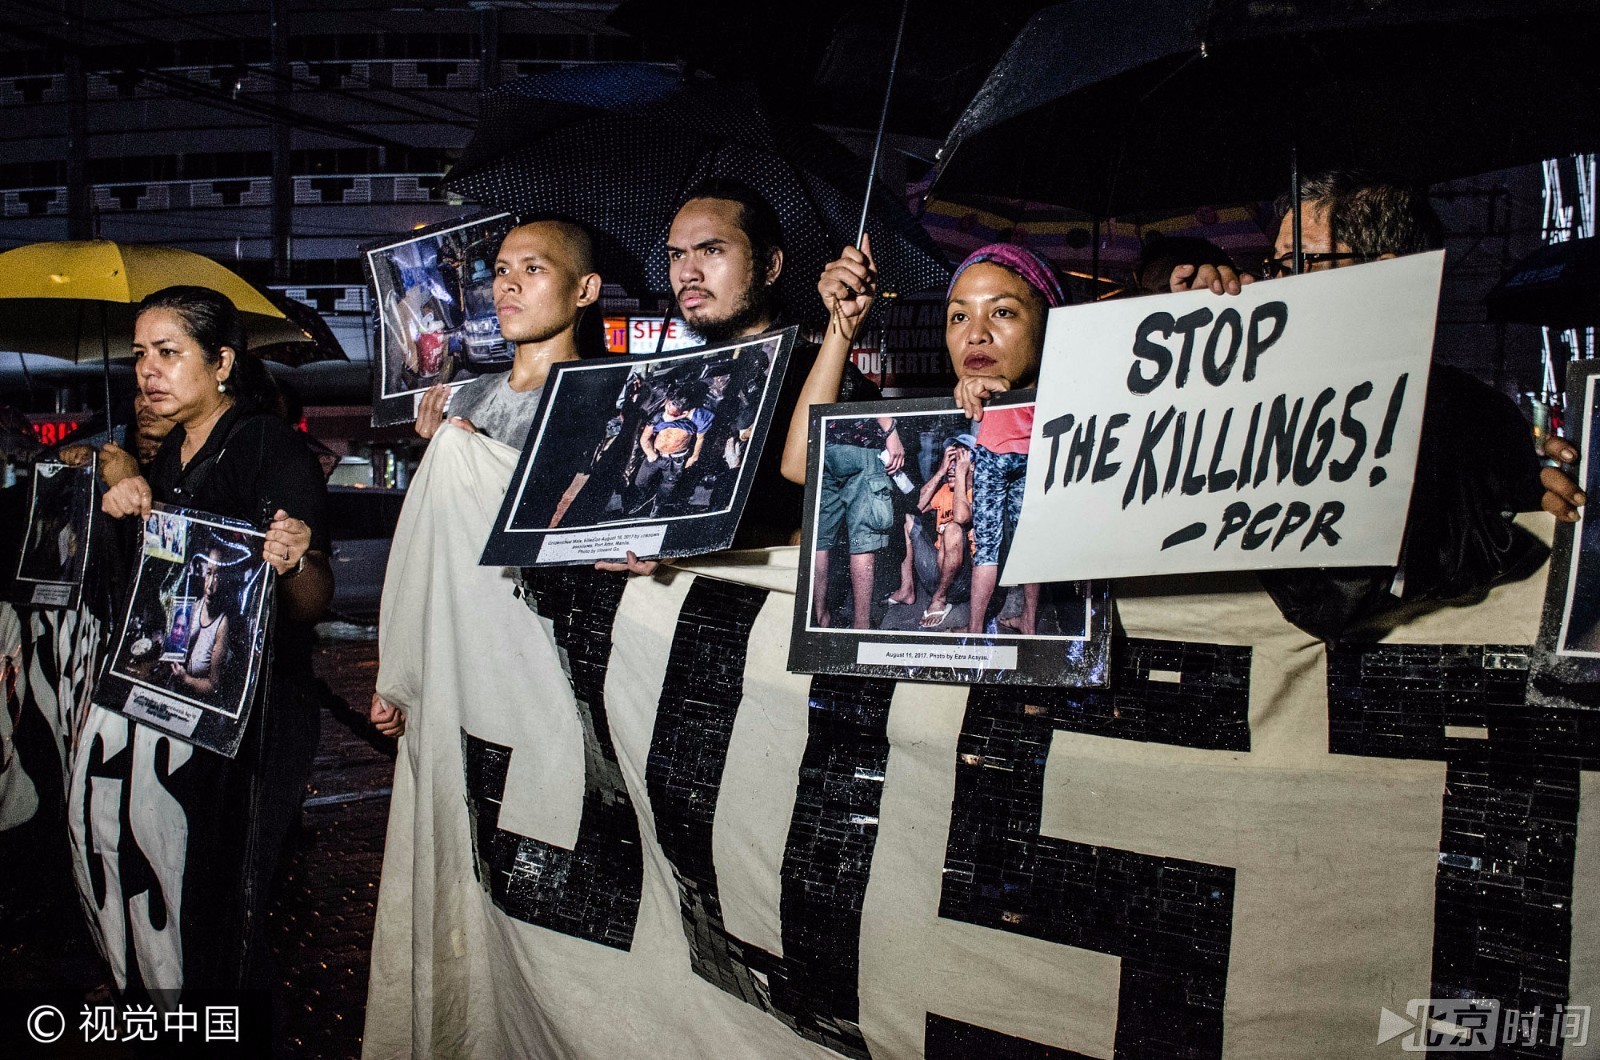 菲总统血腥禁毒一周射杀91人 民众集会要求停